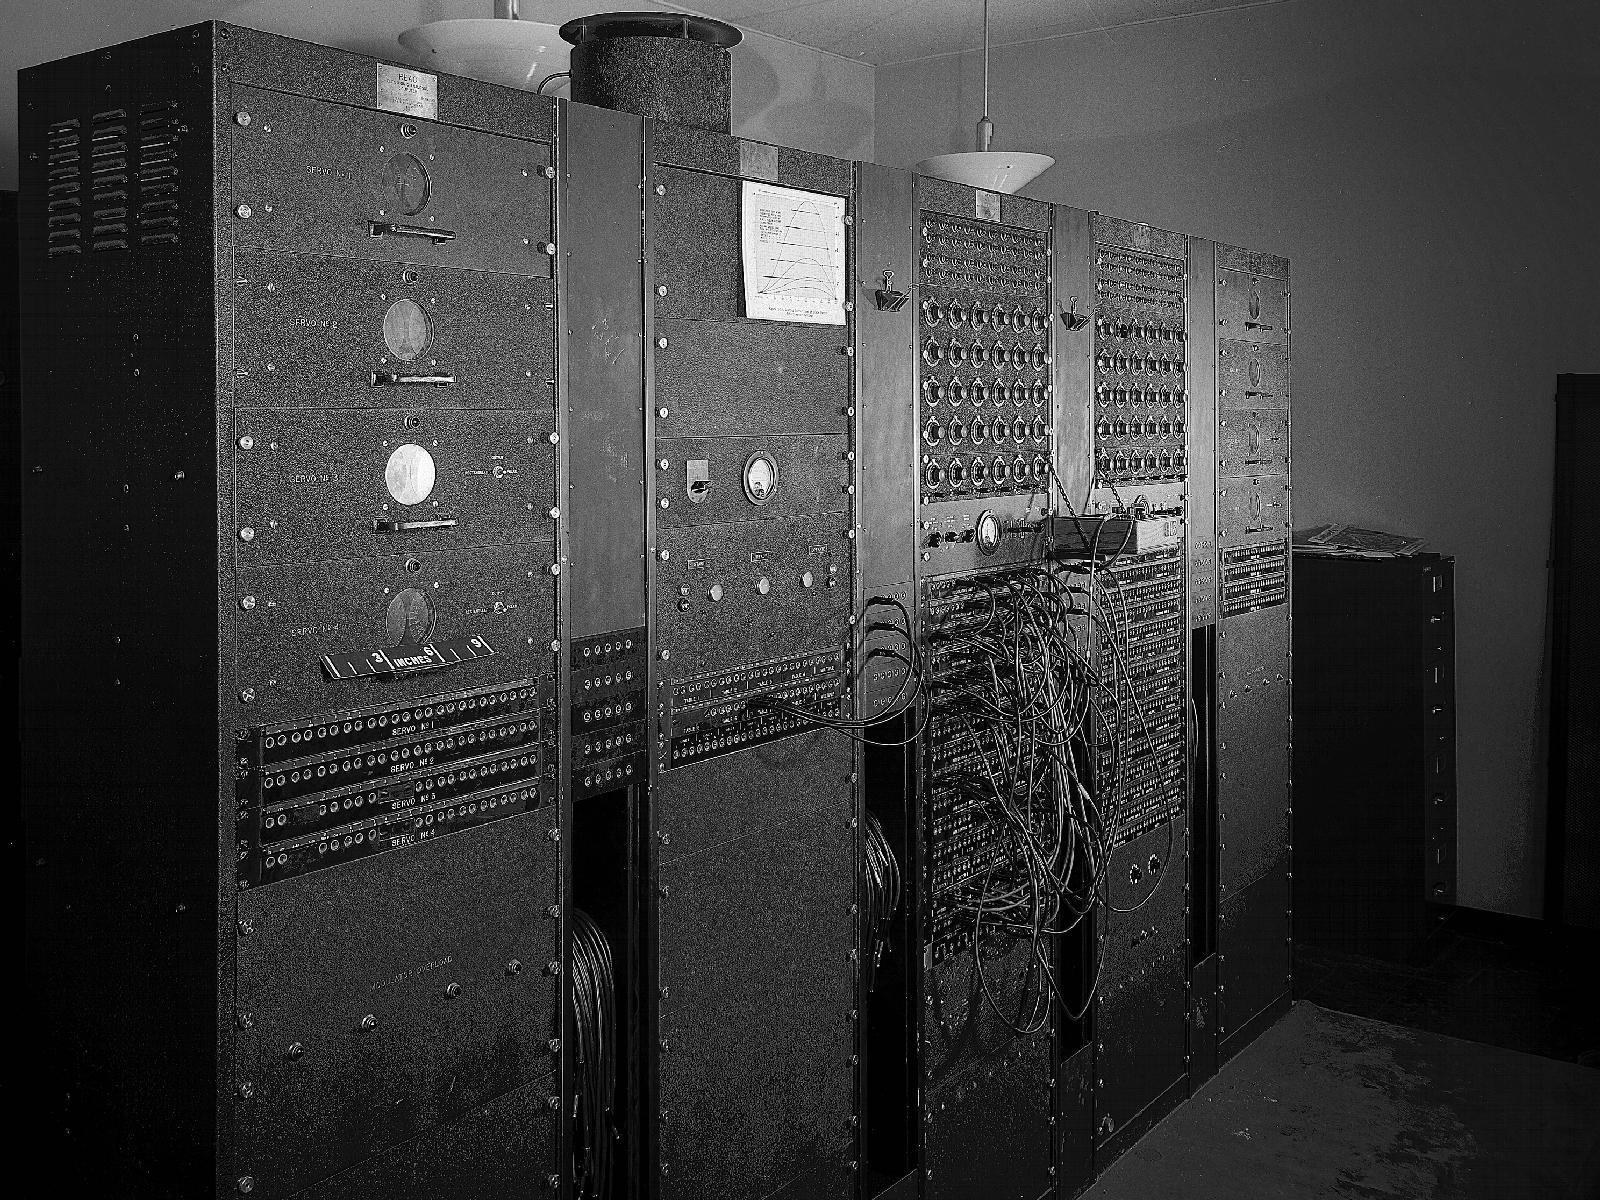 Computadora antigua(1949)<br>Reeves Electronic Analog Computer<br>Crédito de la fotografía: NASA